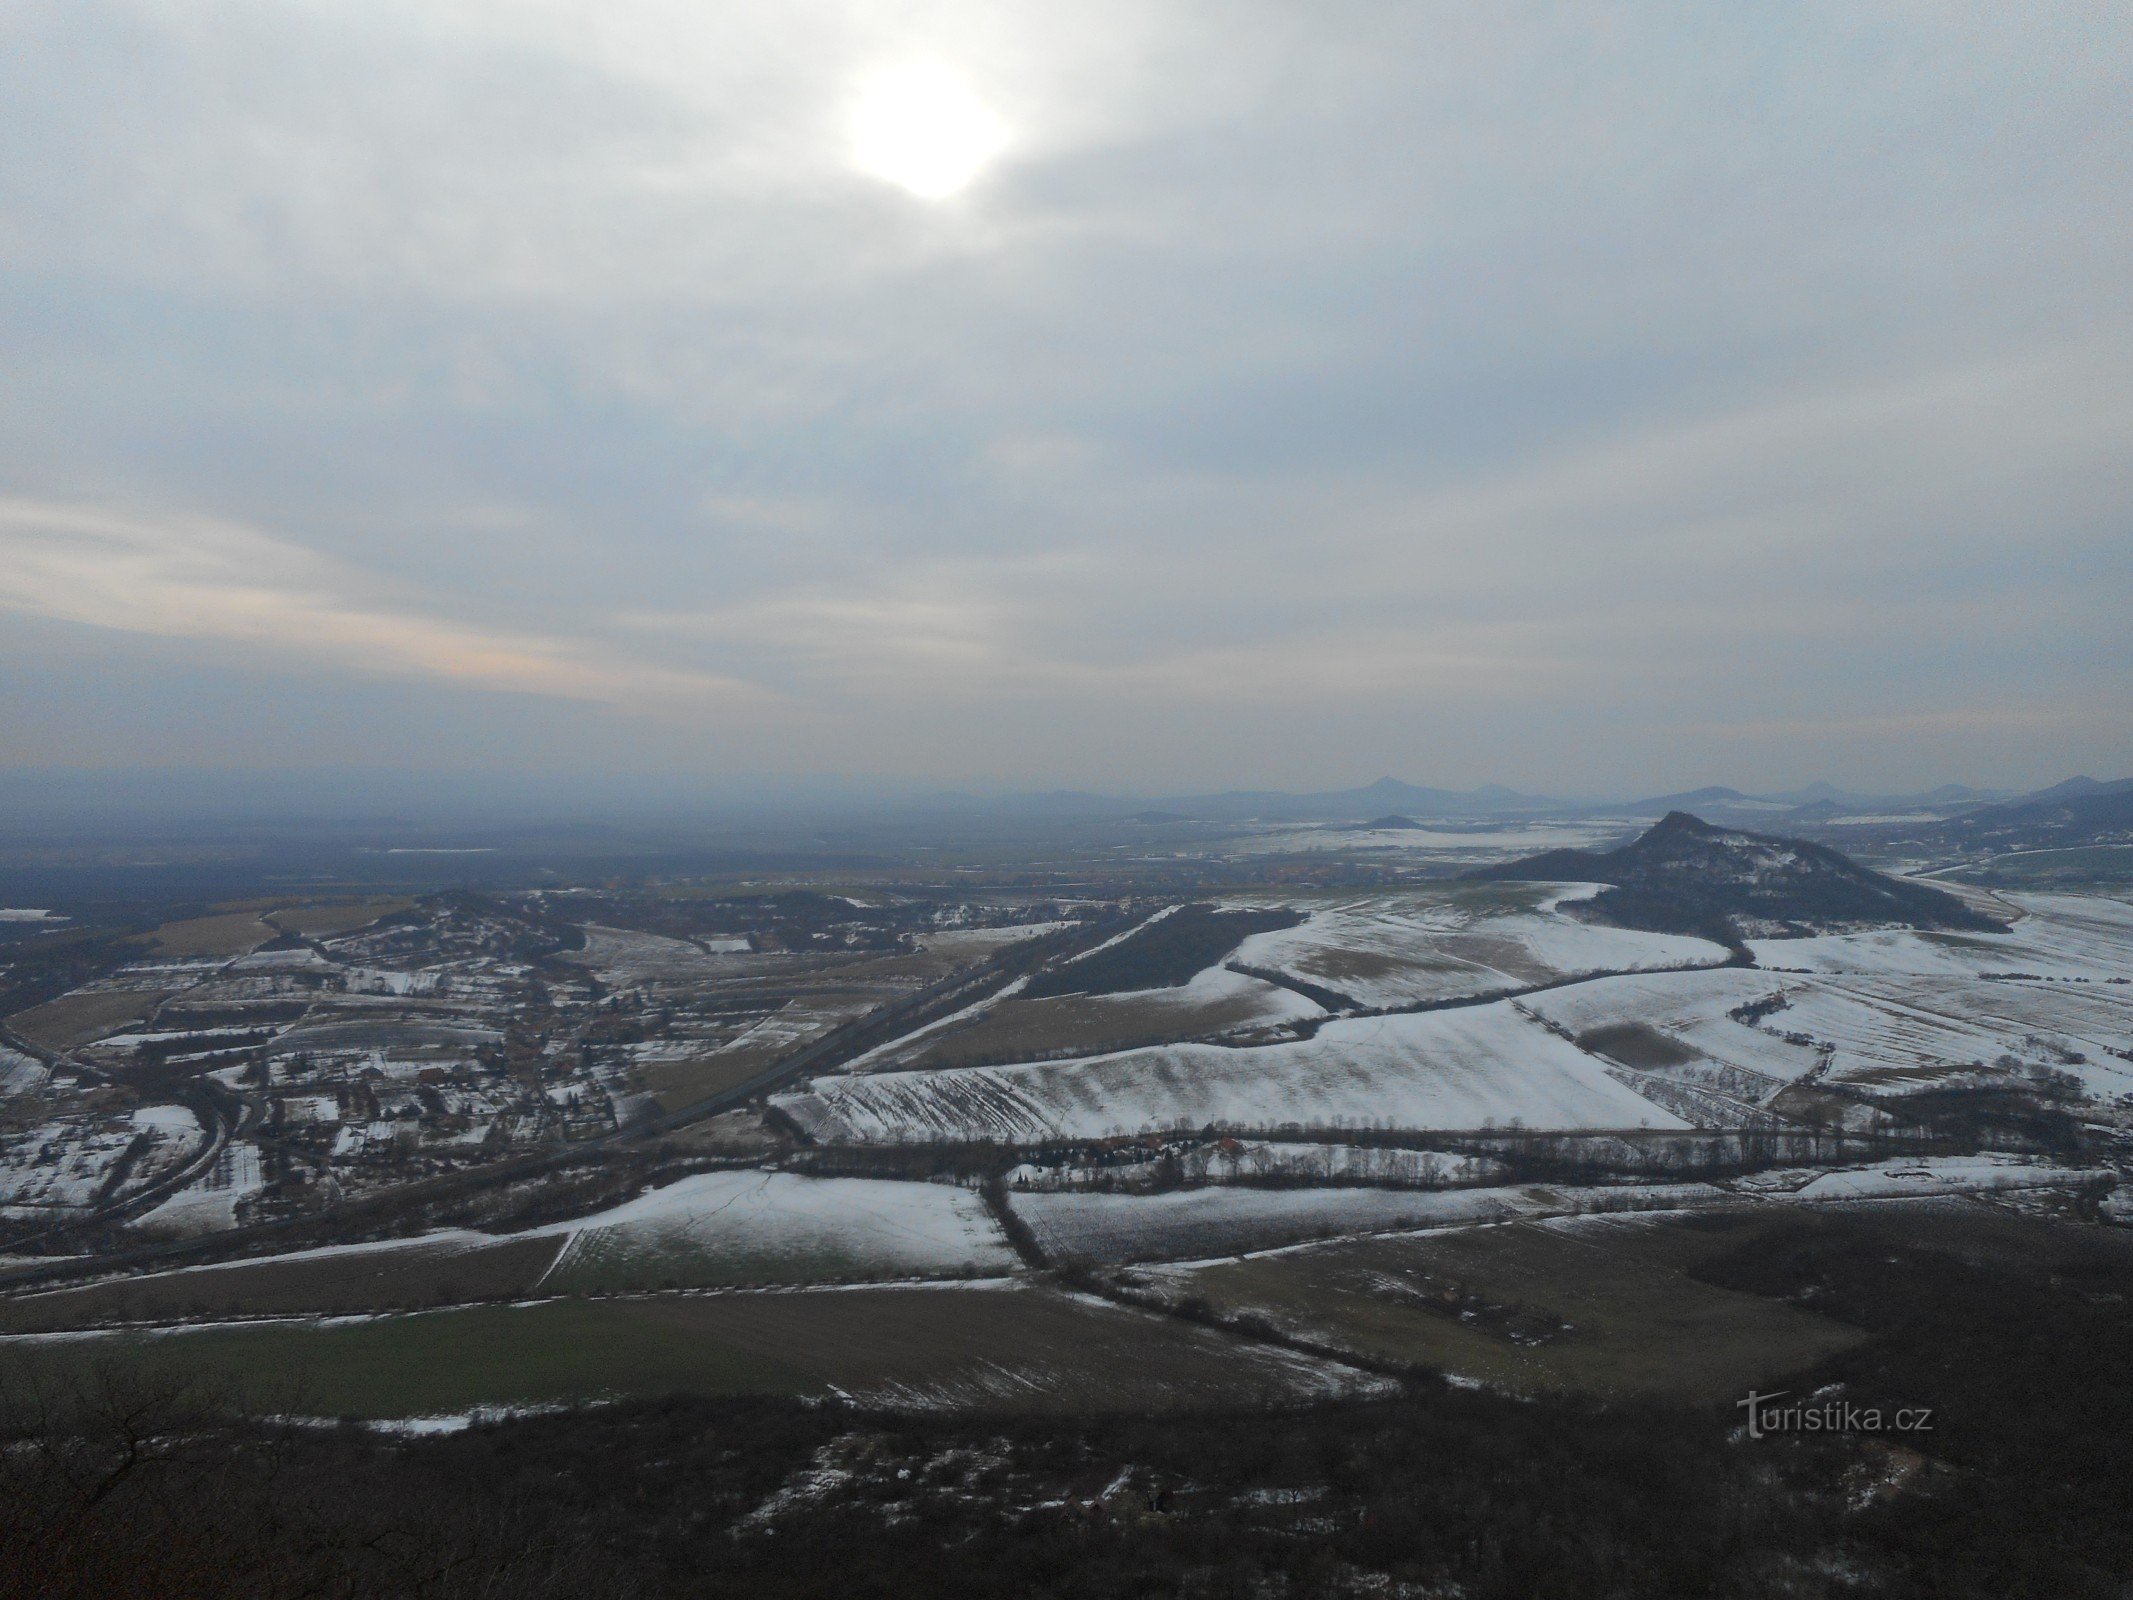 ..., στα νότια, στα δεξιά μπορούμε να δούμε το λόφο Vršetín.